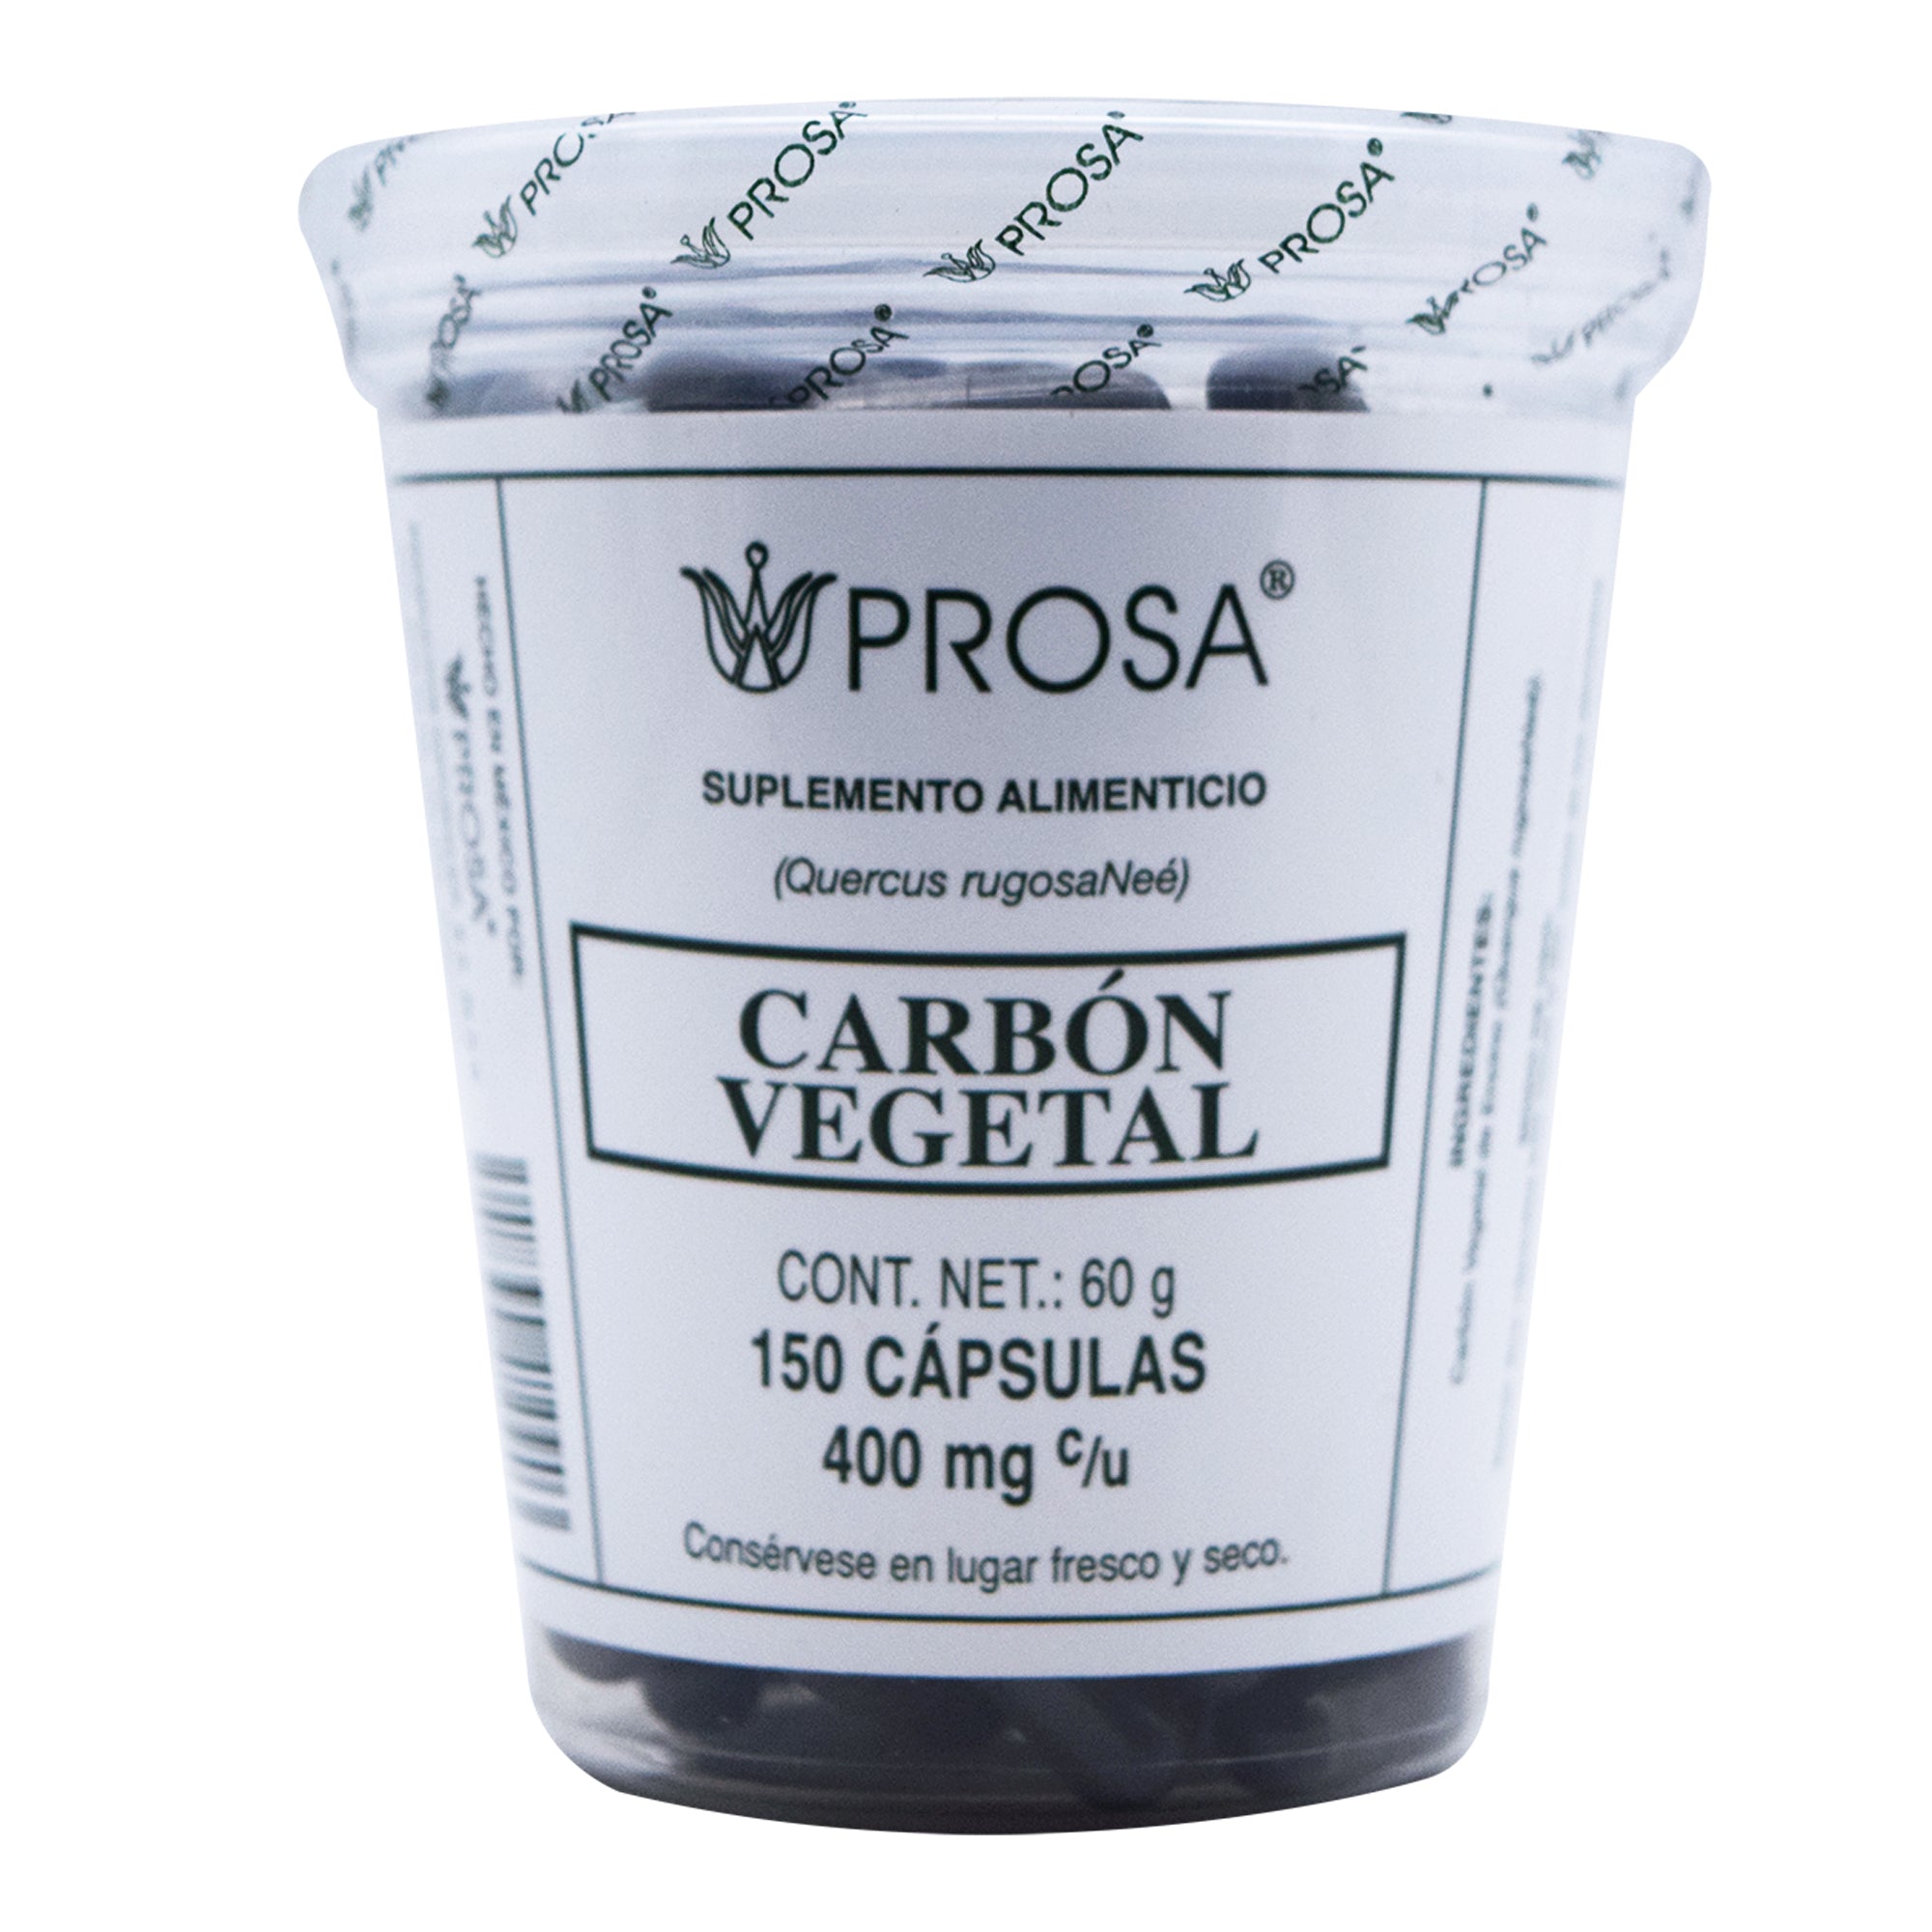 Carbon vegetal 150 cap